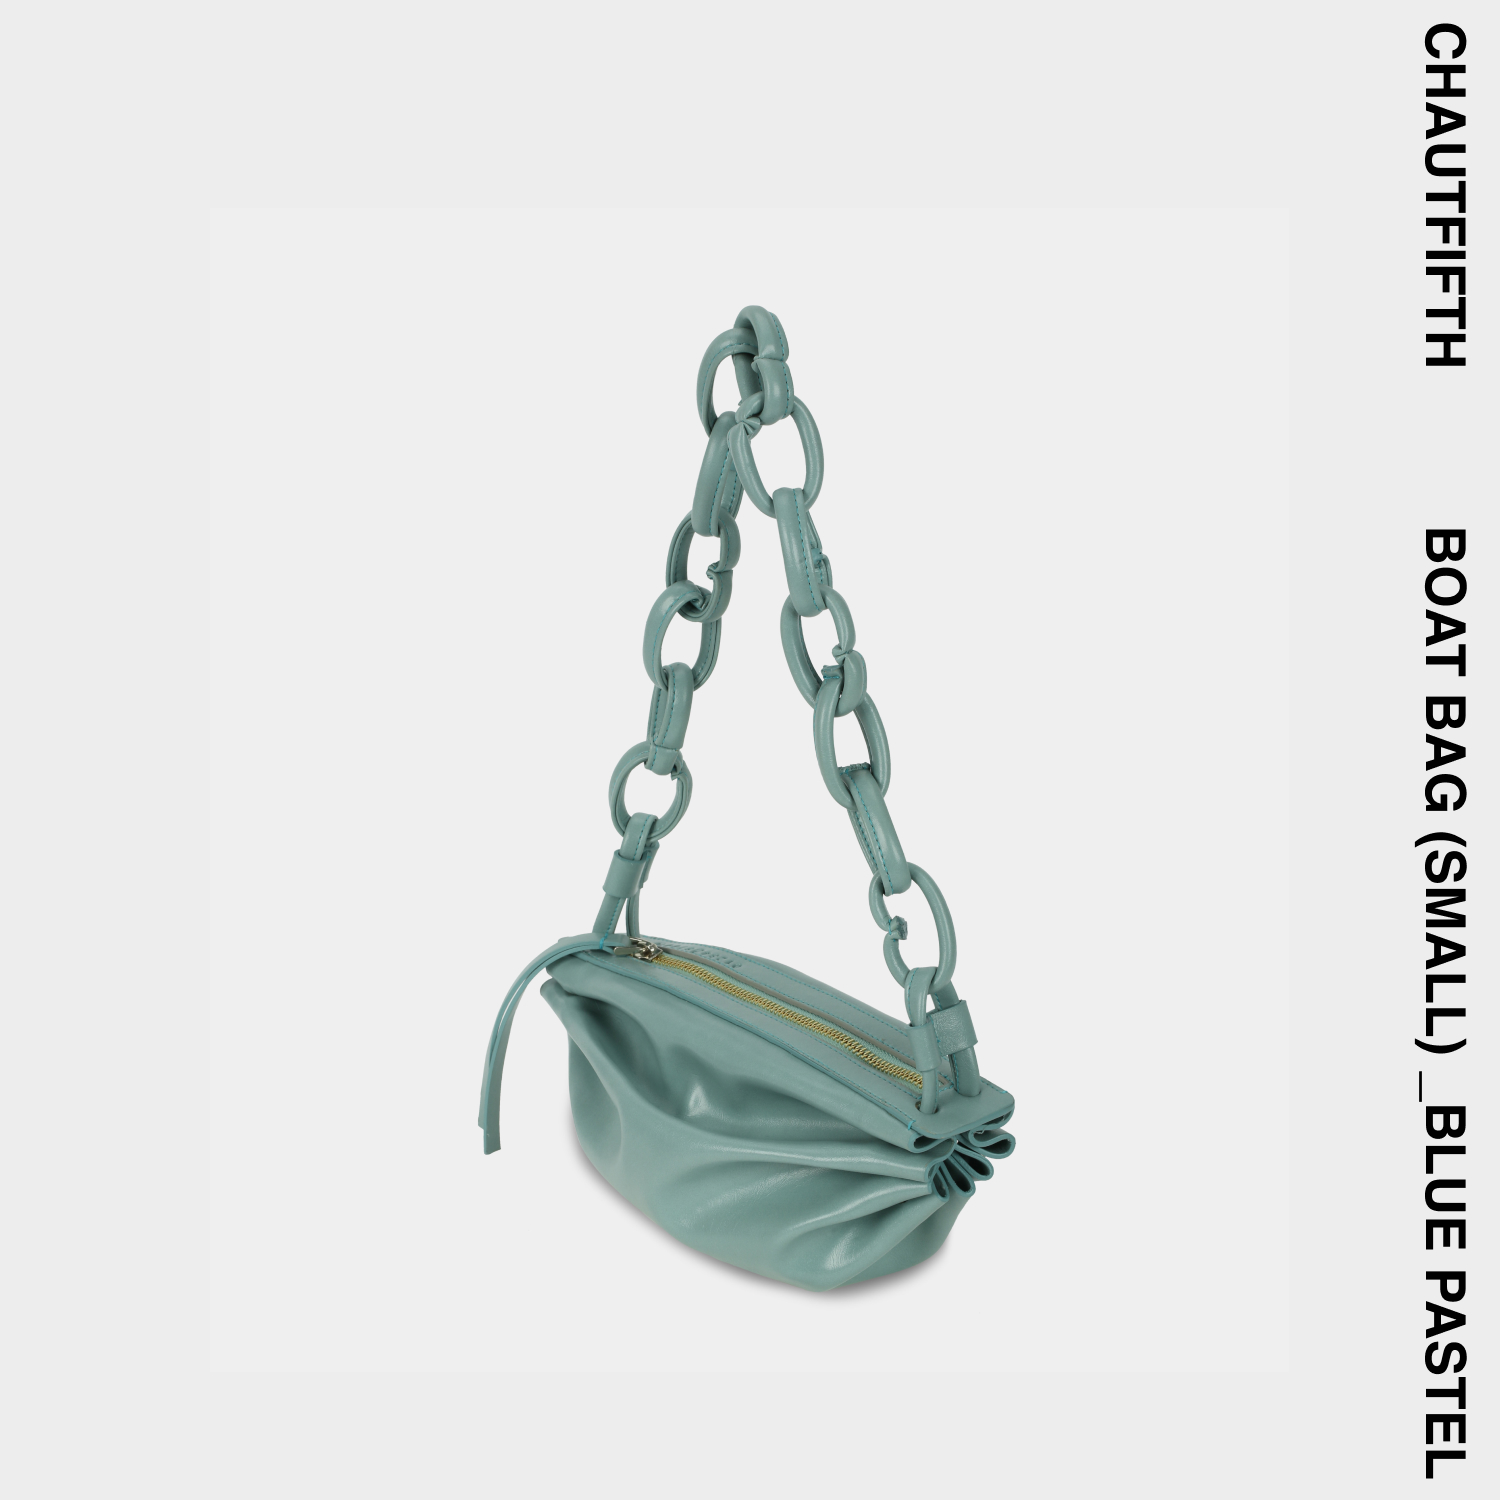 Túi xách BOAT BAG size nhỏ (S) màu Xanh ngọc pastel - CHAUTFIFTH